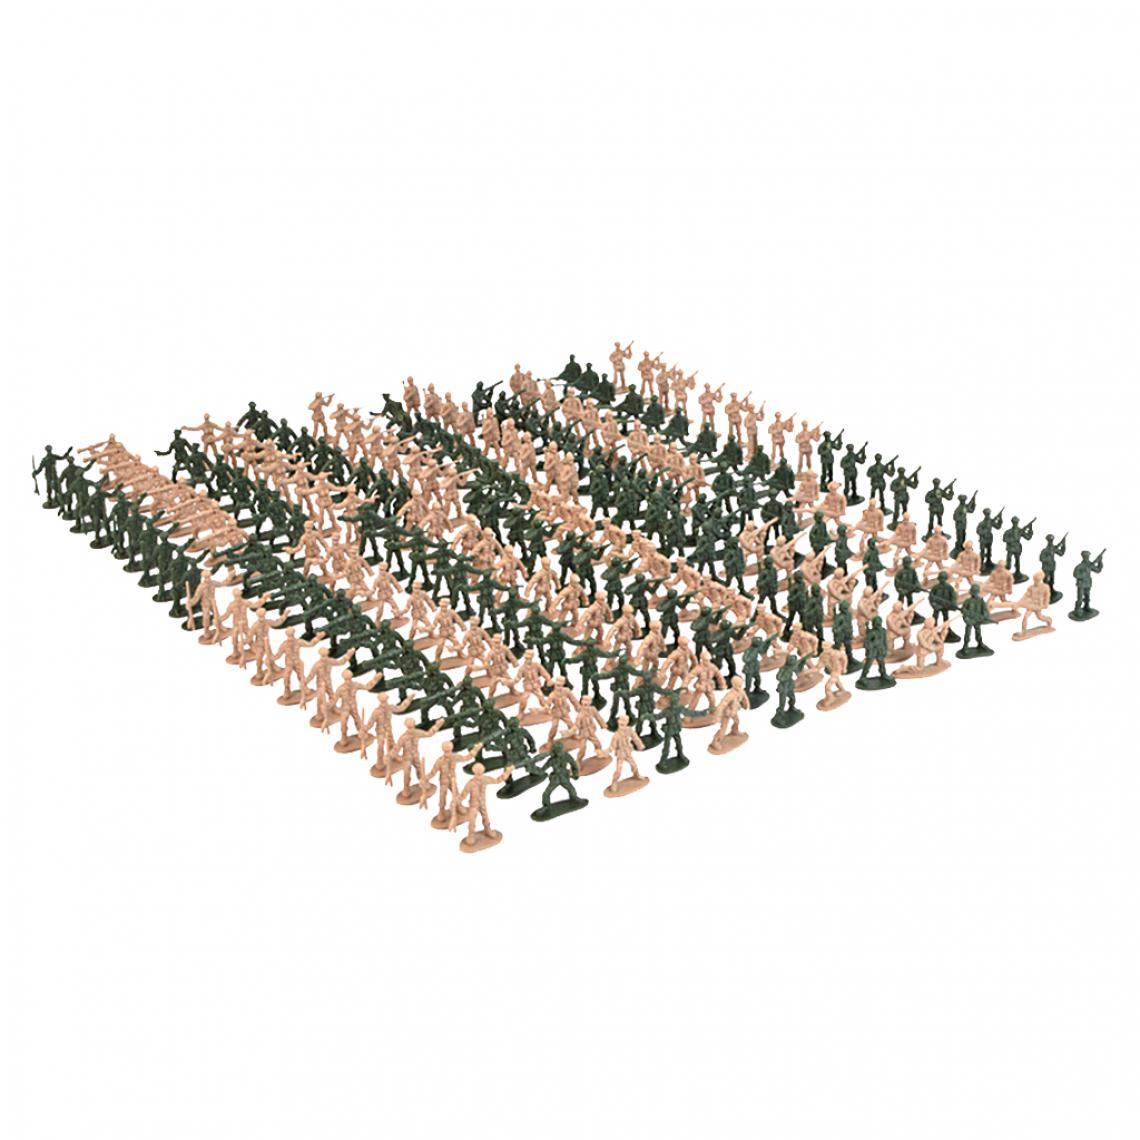 marque generique - 360pcs 1/72 échelle En Plastique Soldats Militaires Figurine Armée Sable Table Accs - Avions